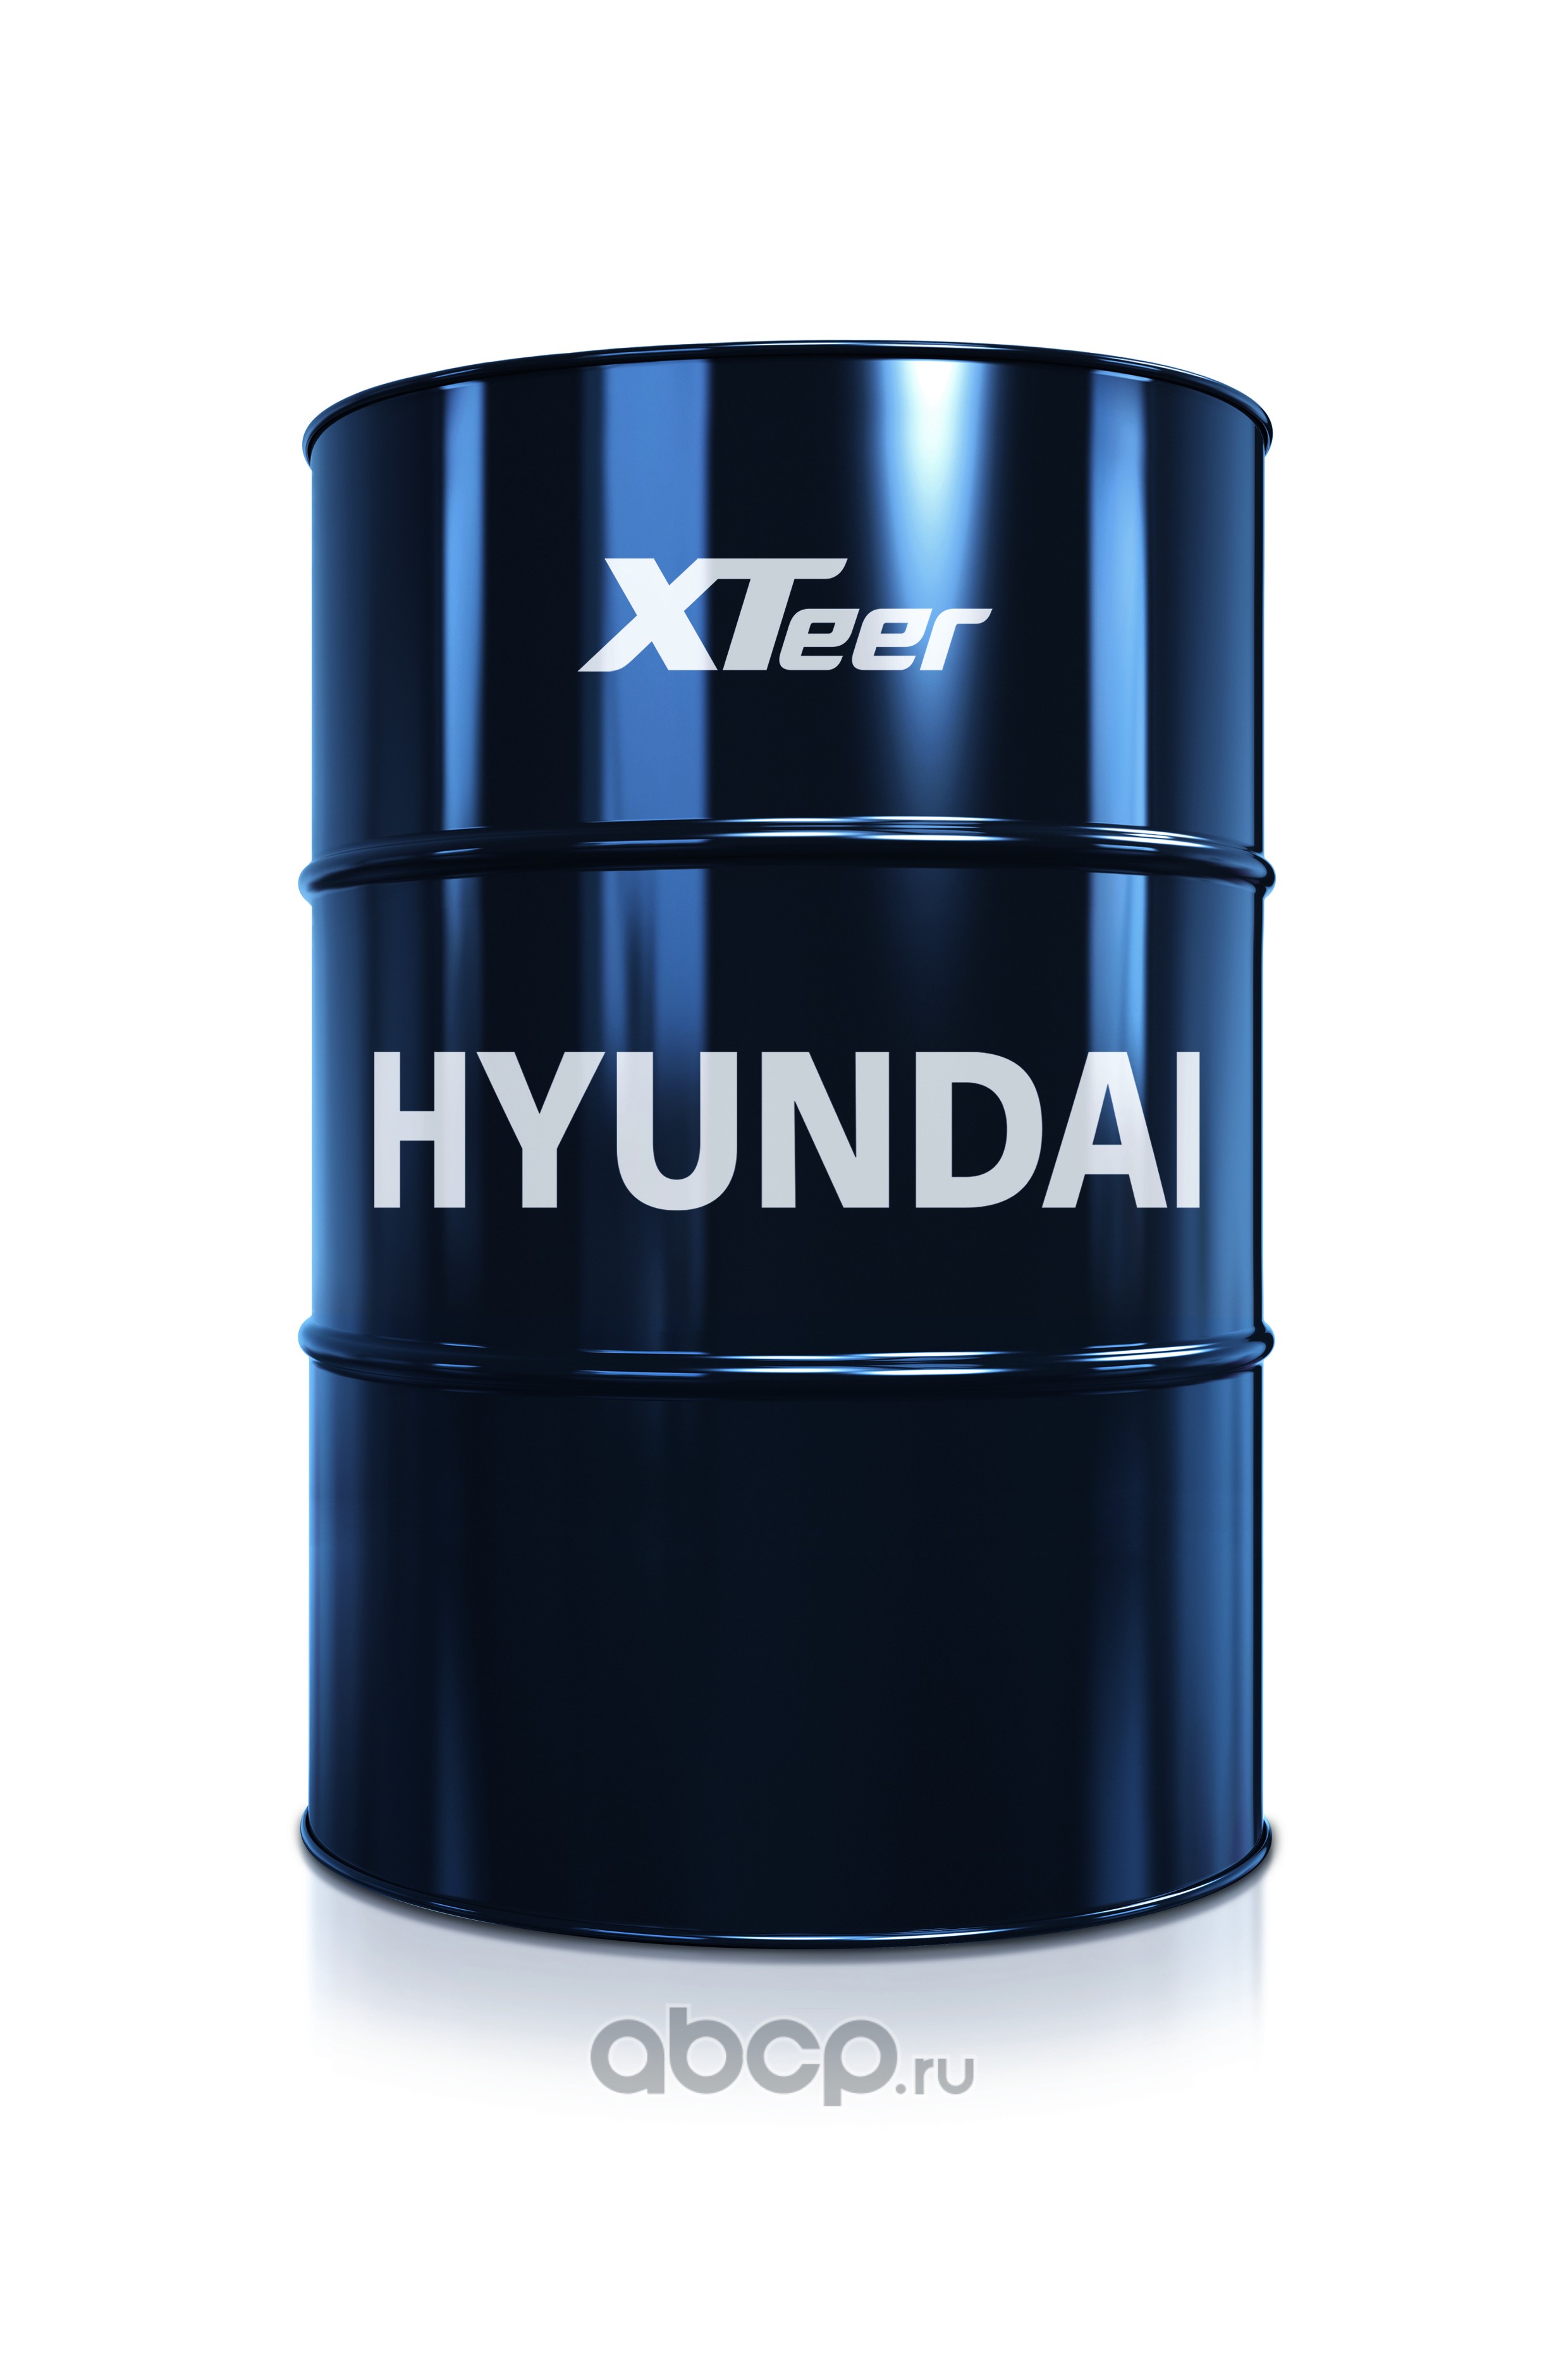 Hyundai xteer 10w 40. 1200016 Hyundai XTEER. Hyundai XTEER gasoline g700 5w-30. Hyundai XTEER Diesel c3. Hyundai XTEER 1061126.